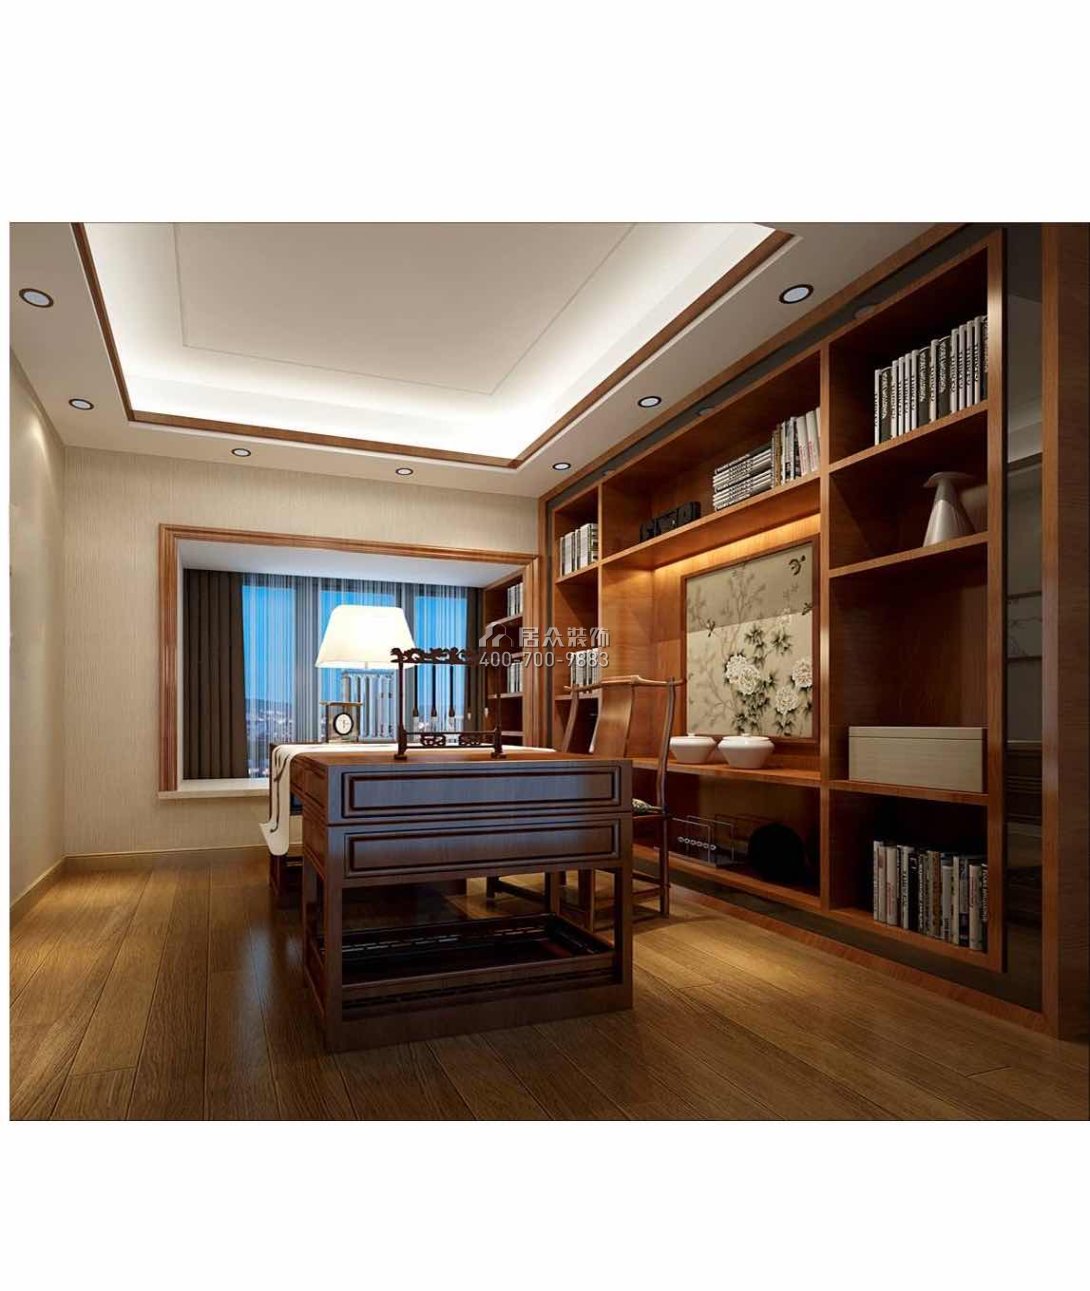 仁山智水花园420平方米欧式风格别墅户型书房装修效果图